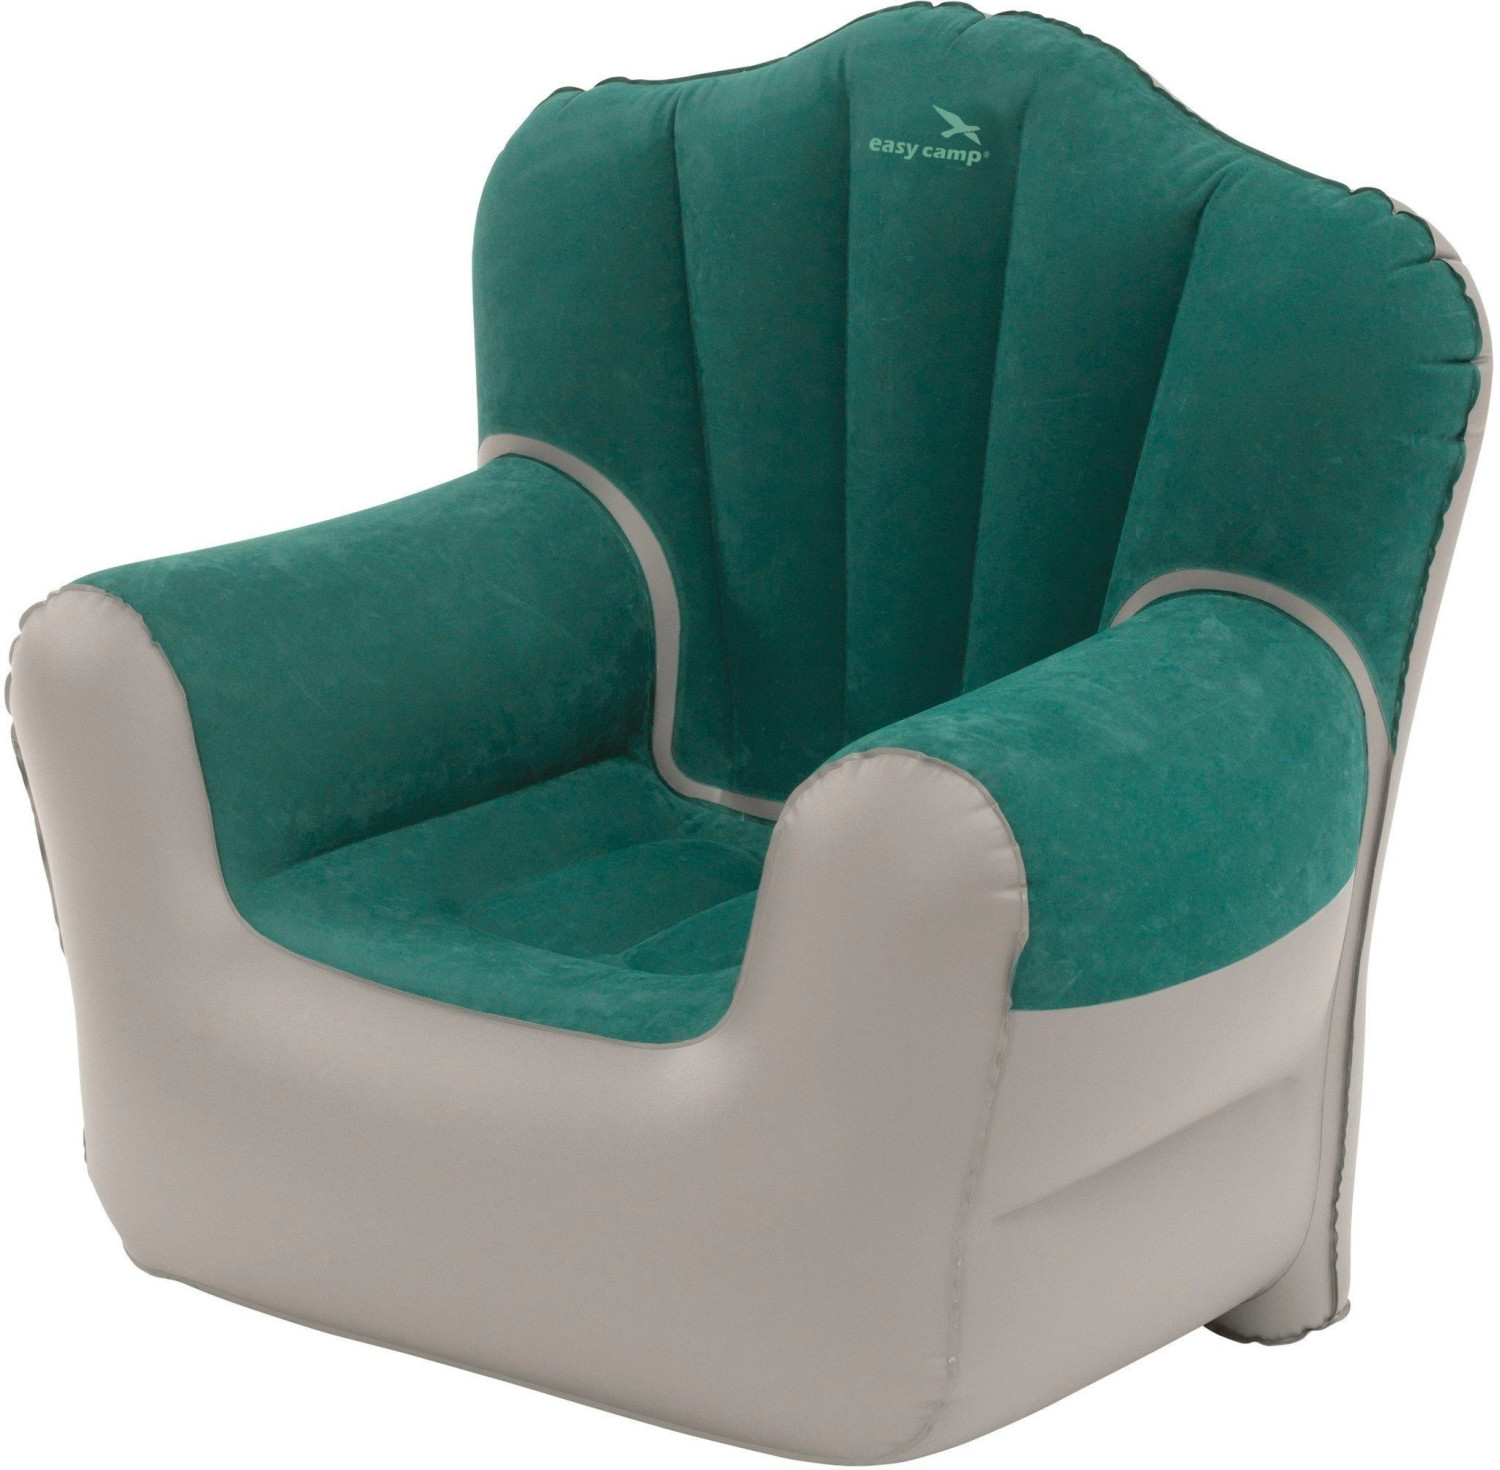 easy camp Comfy Chair ab 29,99 € | Preisvergleich bei idealo.de